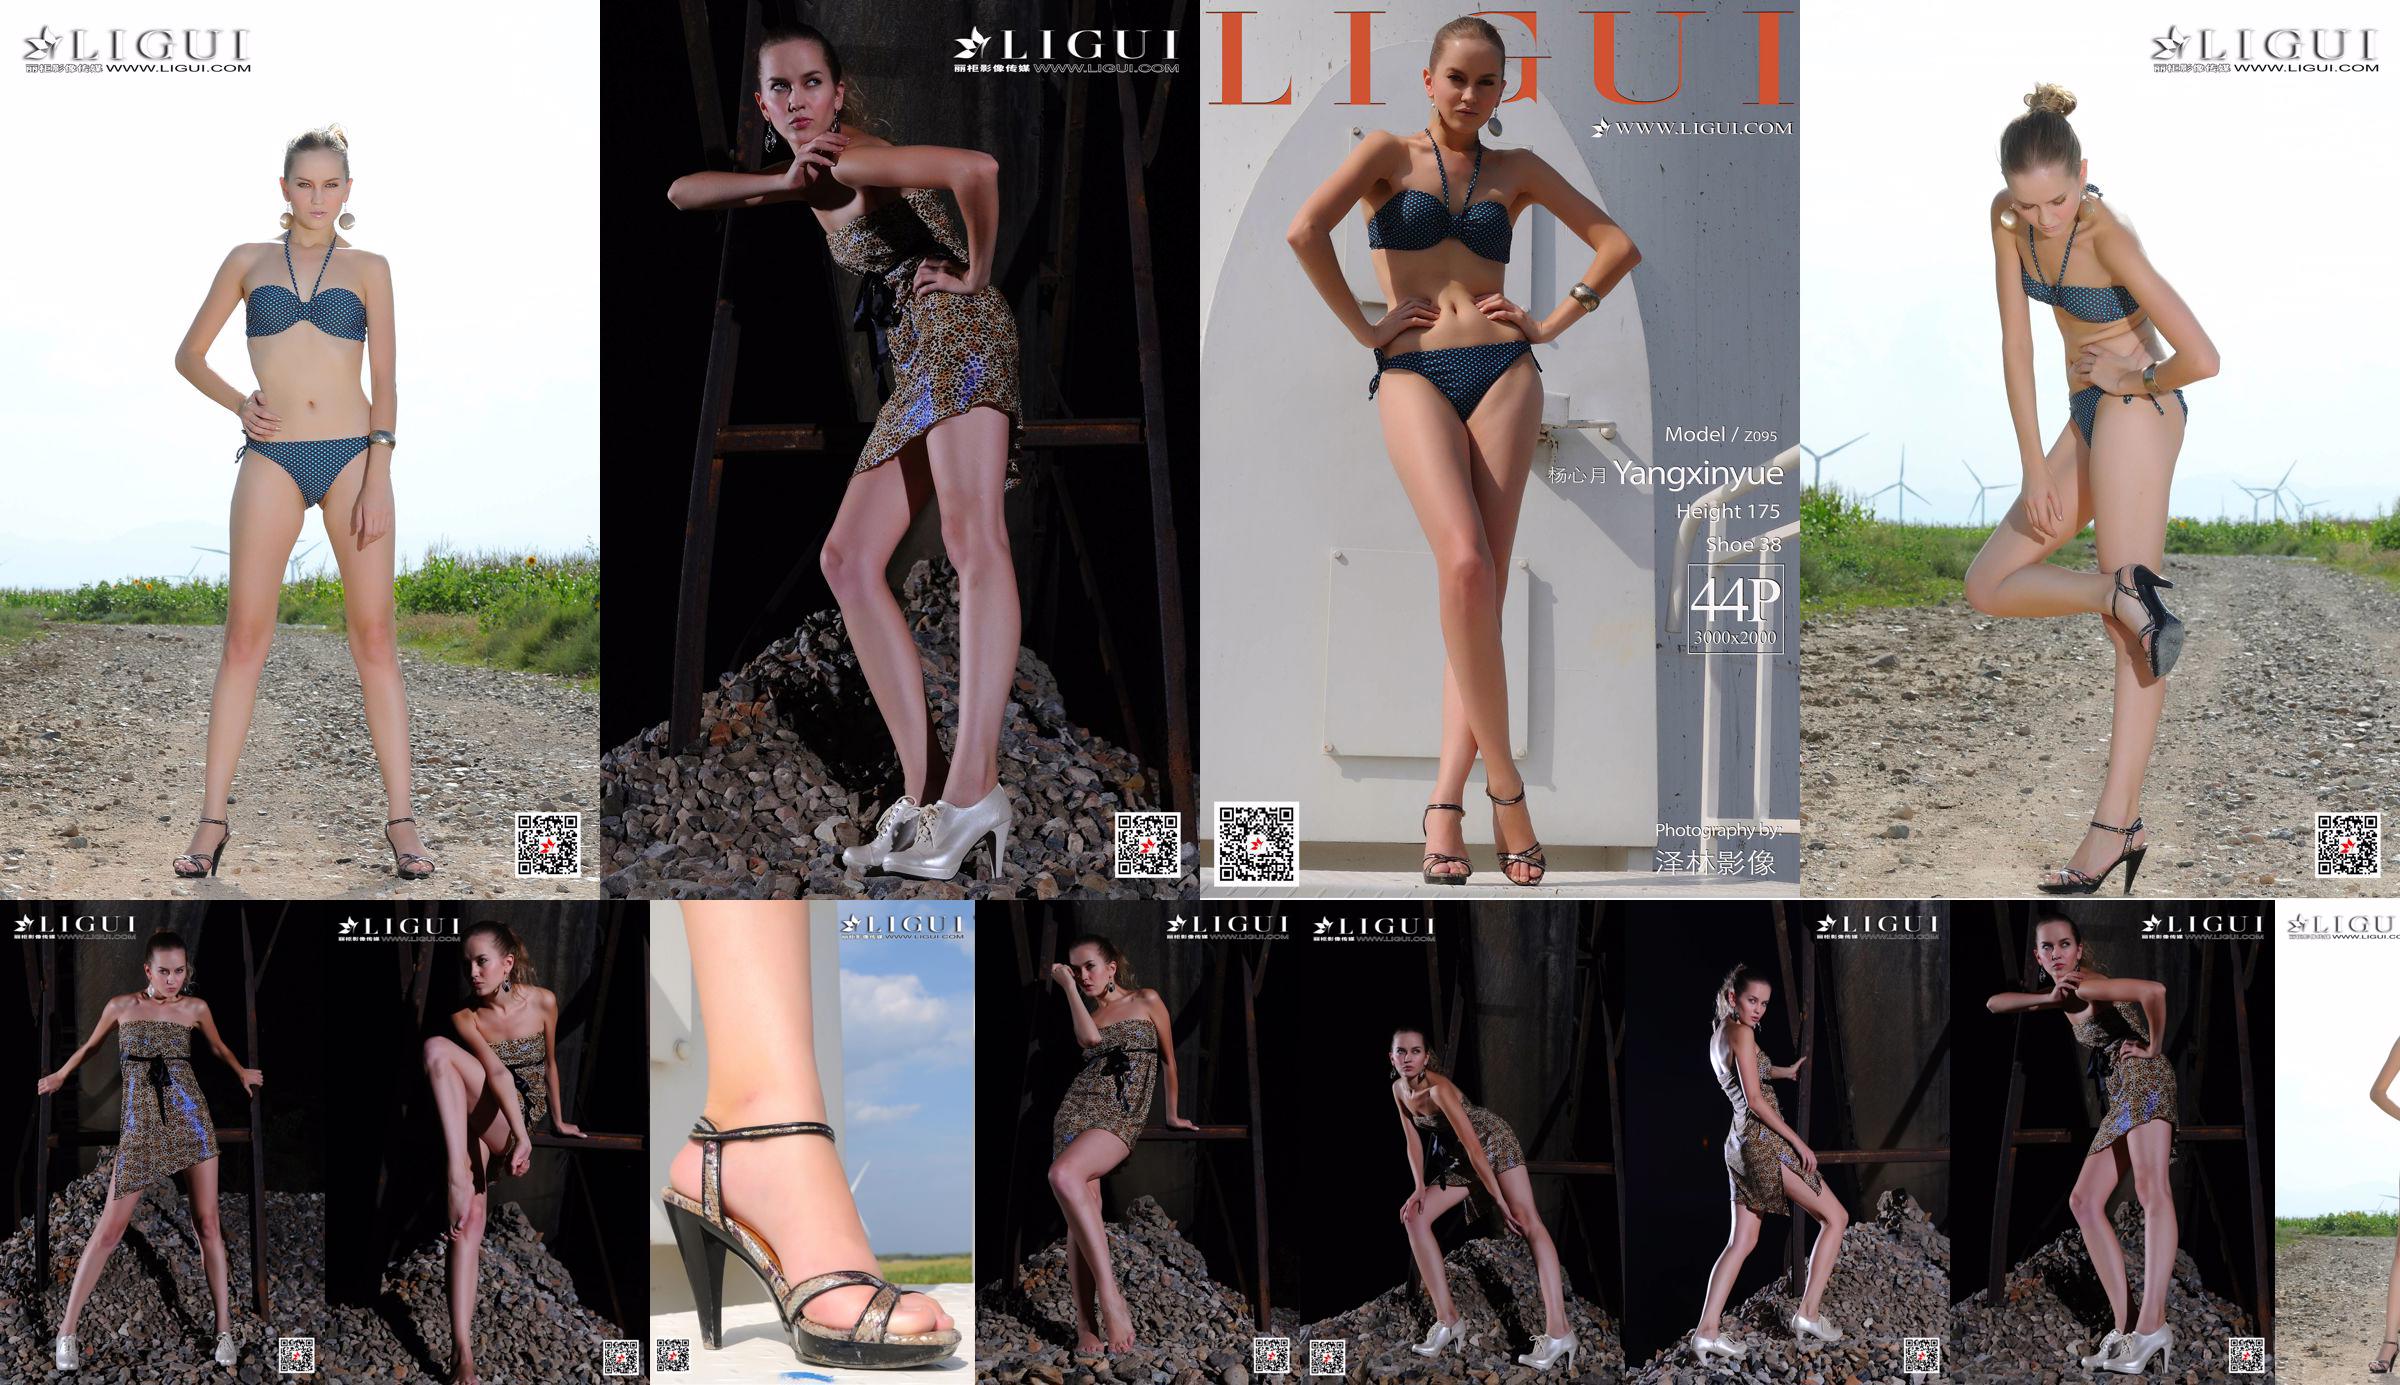 [丽 柜 Ligui] Model Yang Xinyue "Bikini" No.933e3d Pagina 1